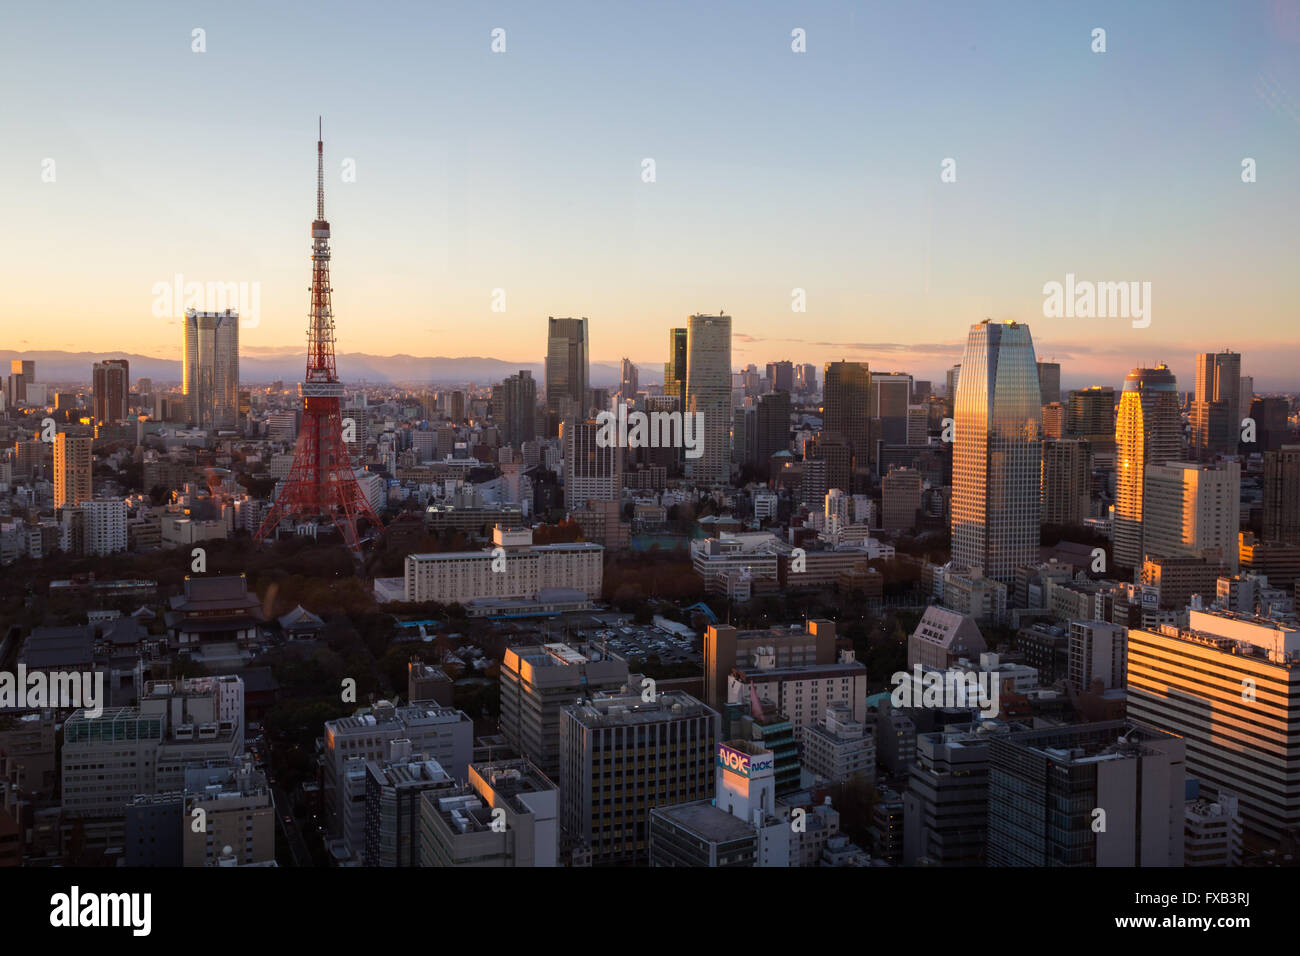 Tokyo, Japan - 18. Dezember 2014: Fotografieren der Tokioter Skyline mit Tokyo Tower des World Trade Center entnommen. Stockfoto